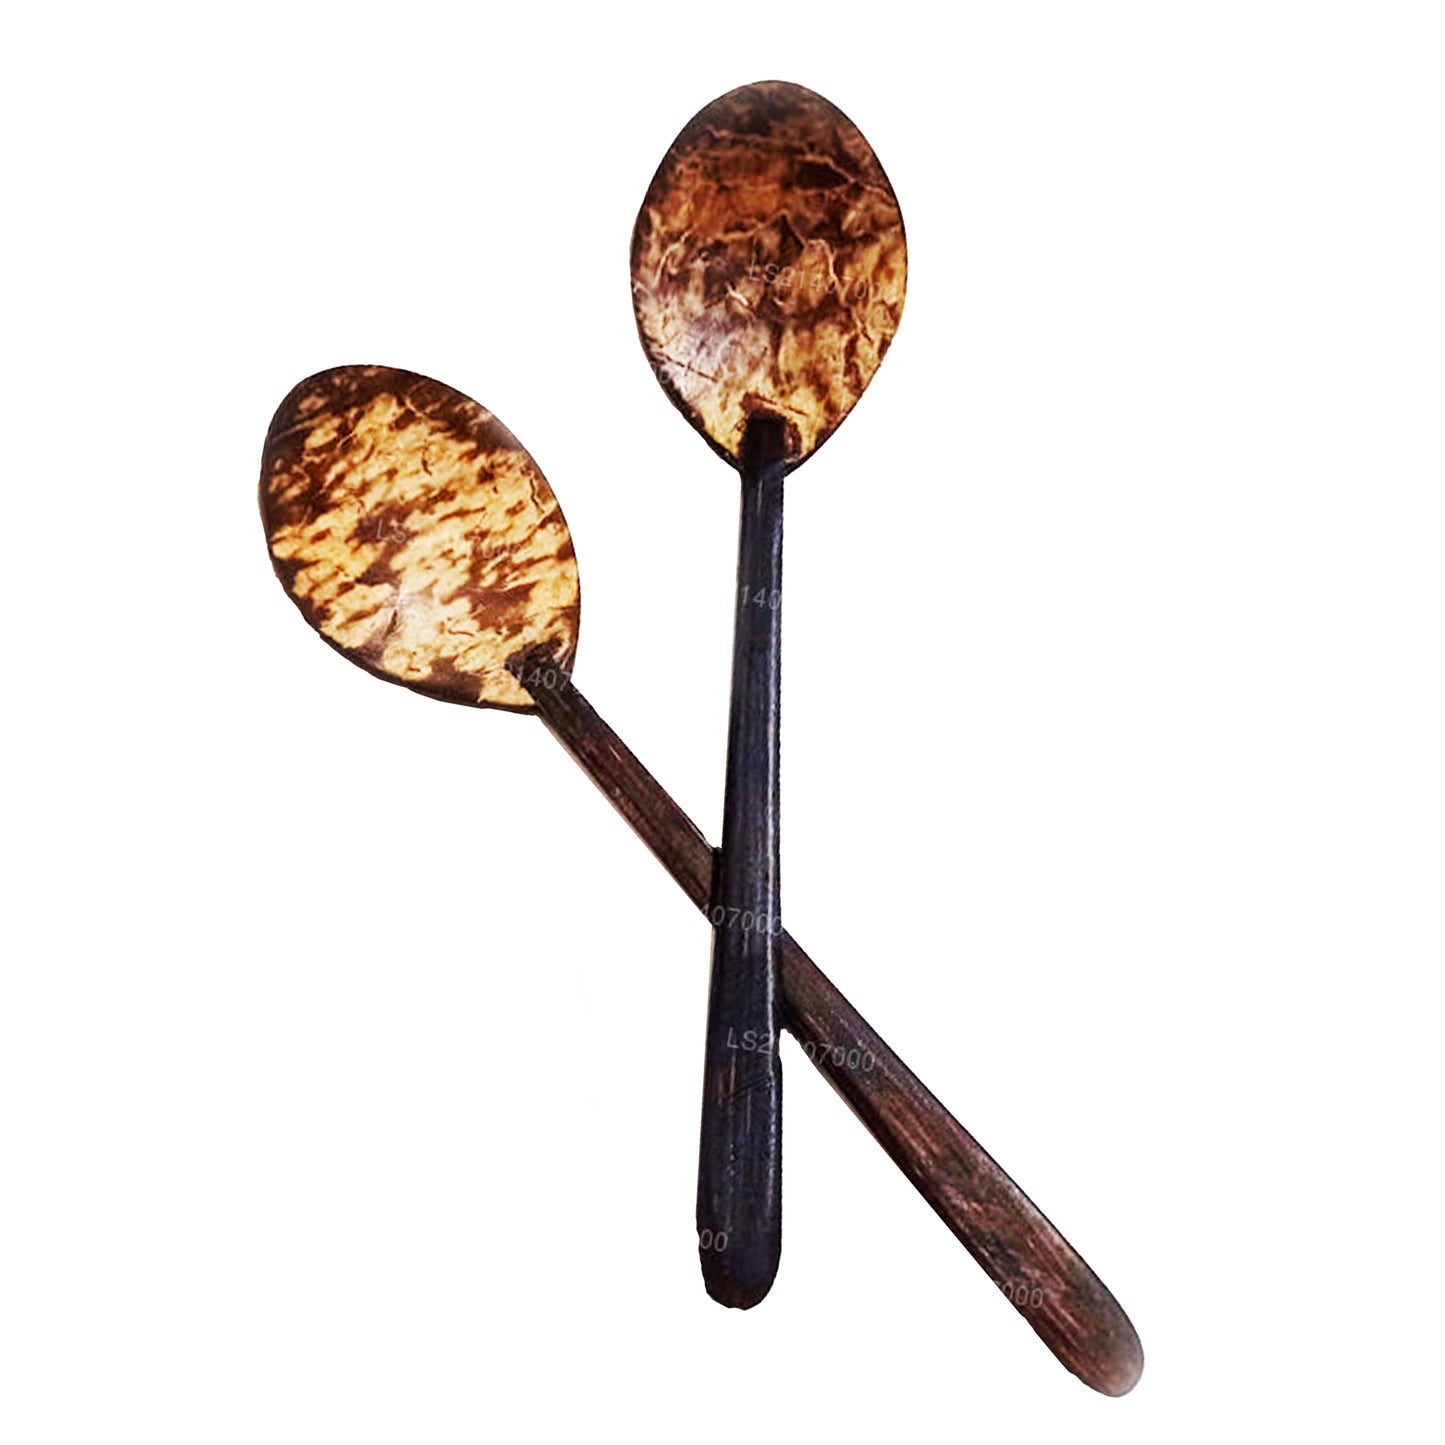 Besteck mit Löffel aus Kokosnussschale (14 cm)